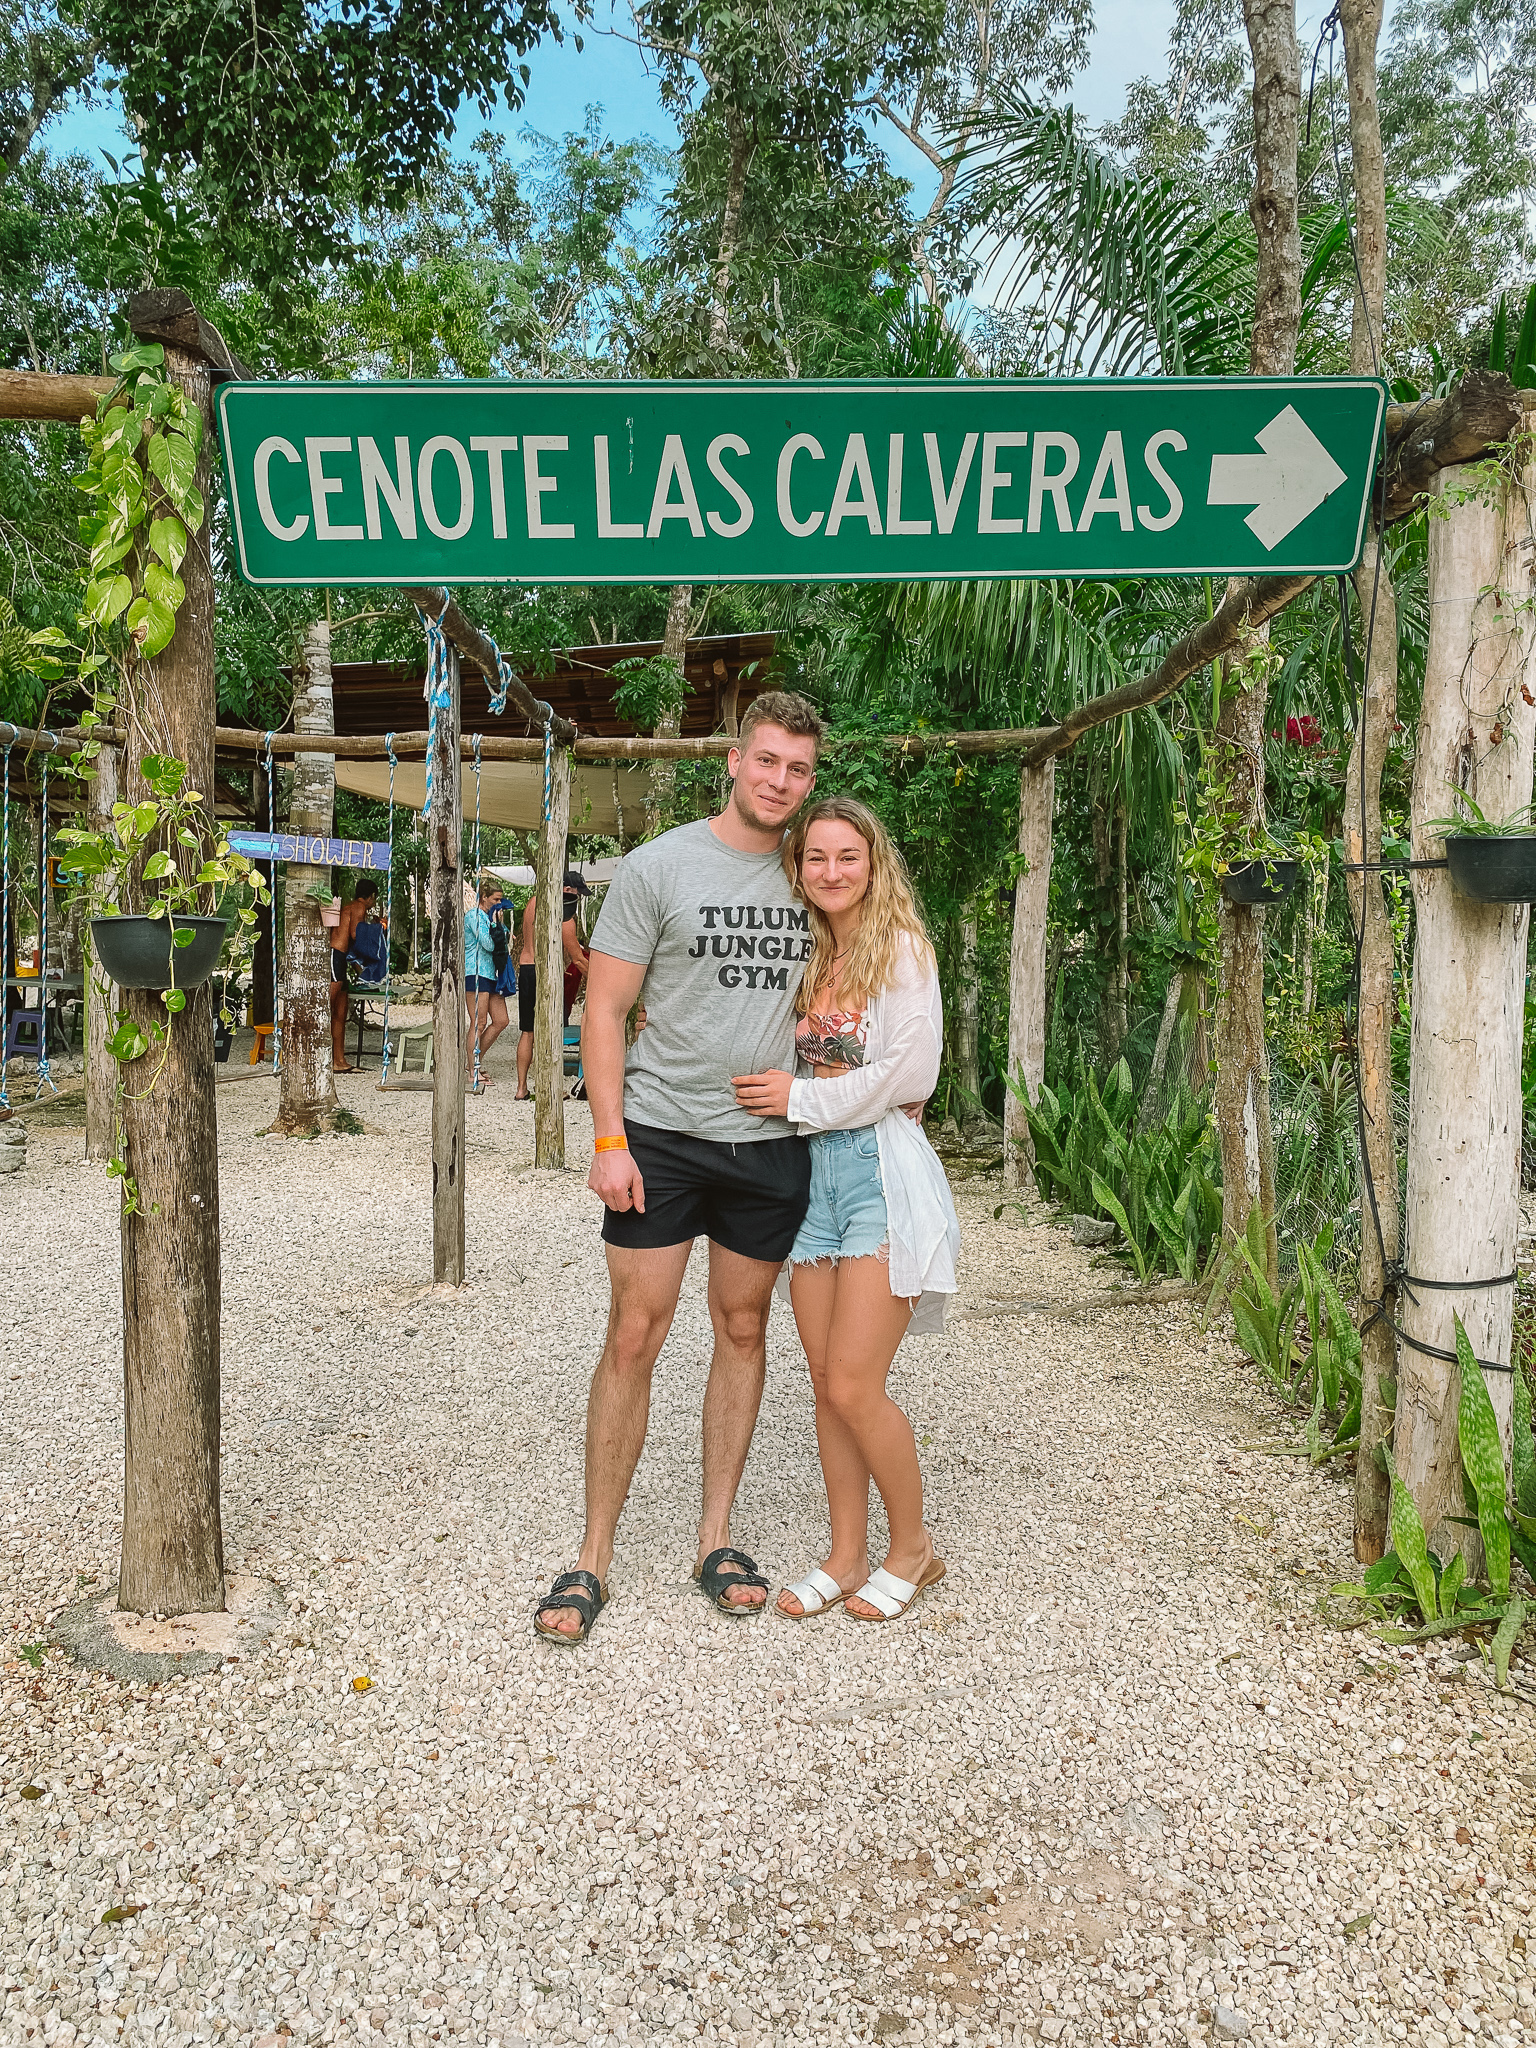 Cenote Las Calaveras